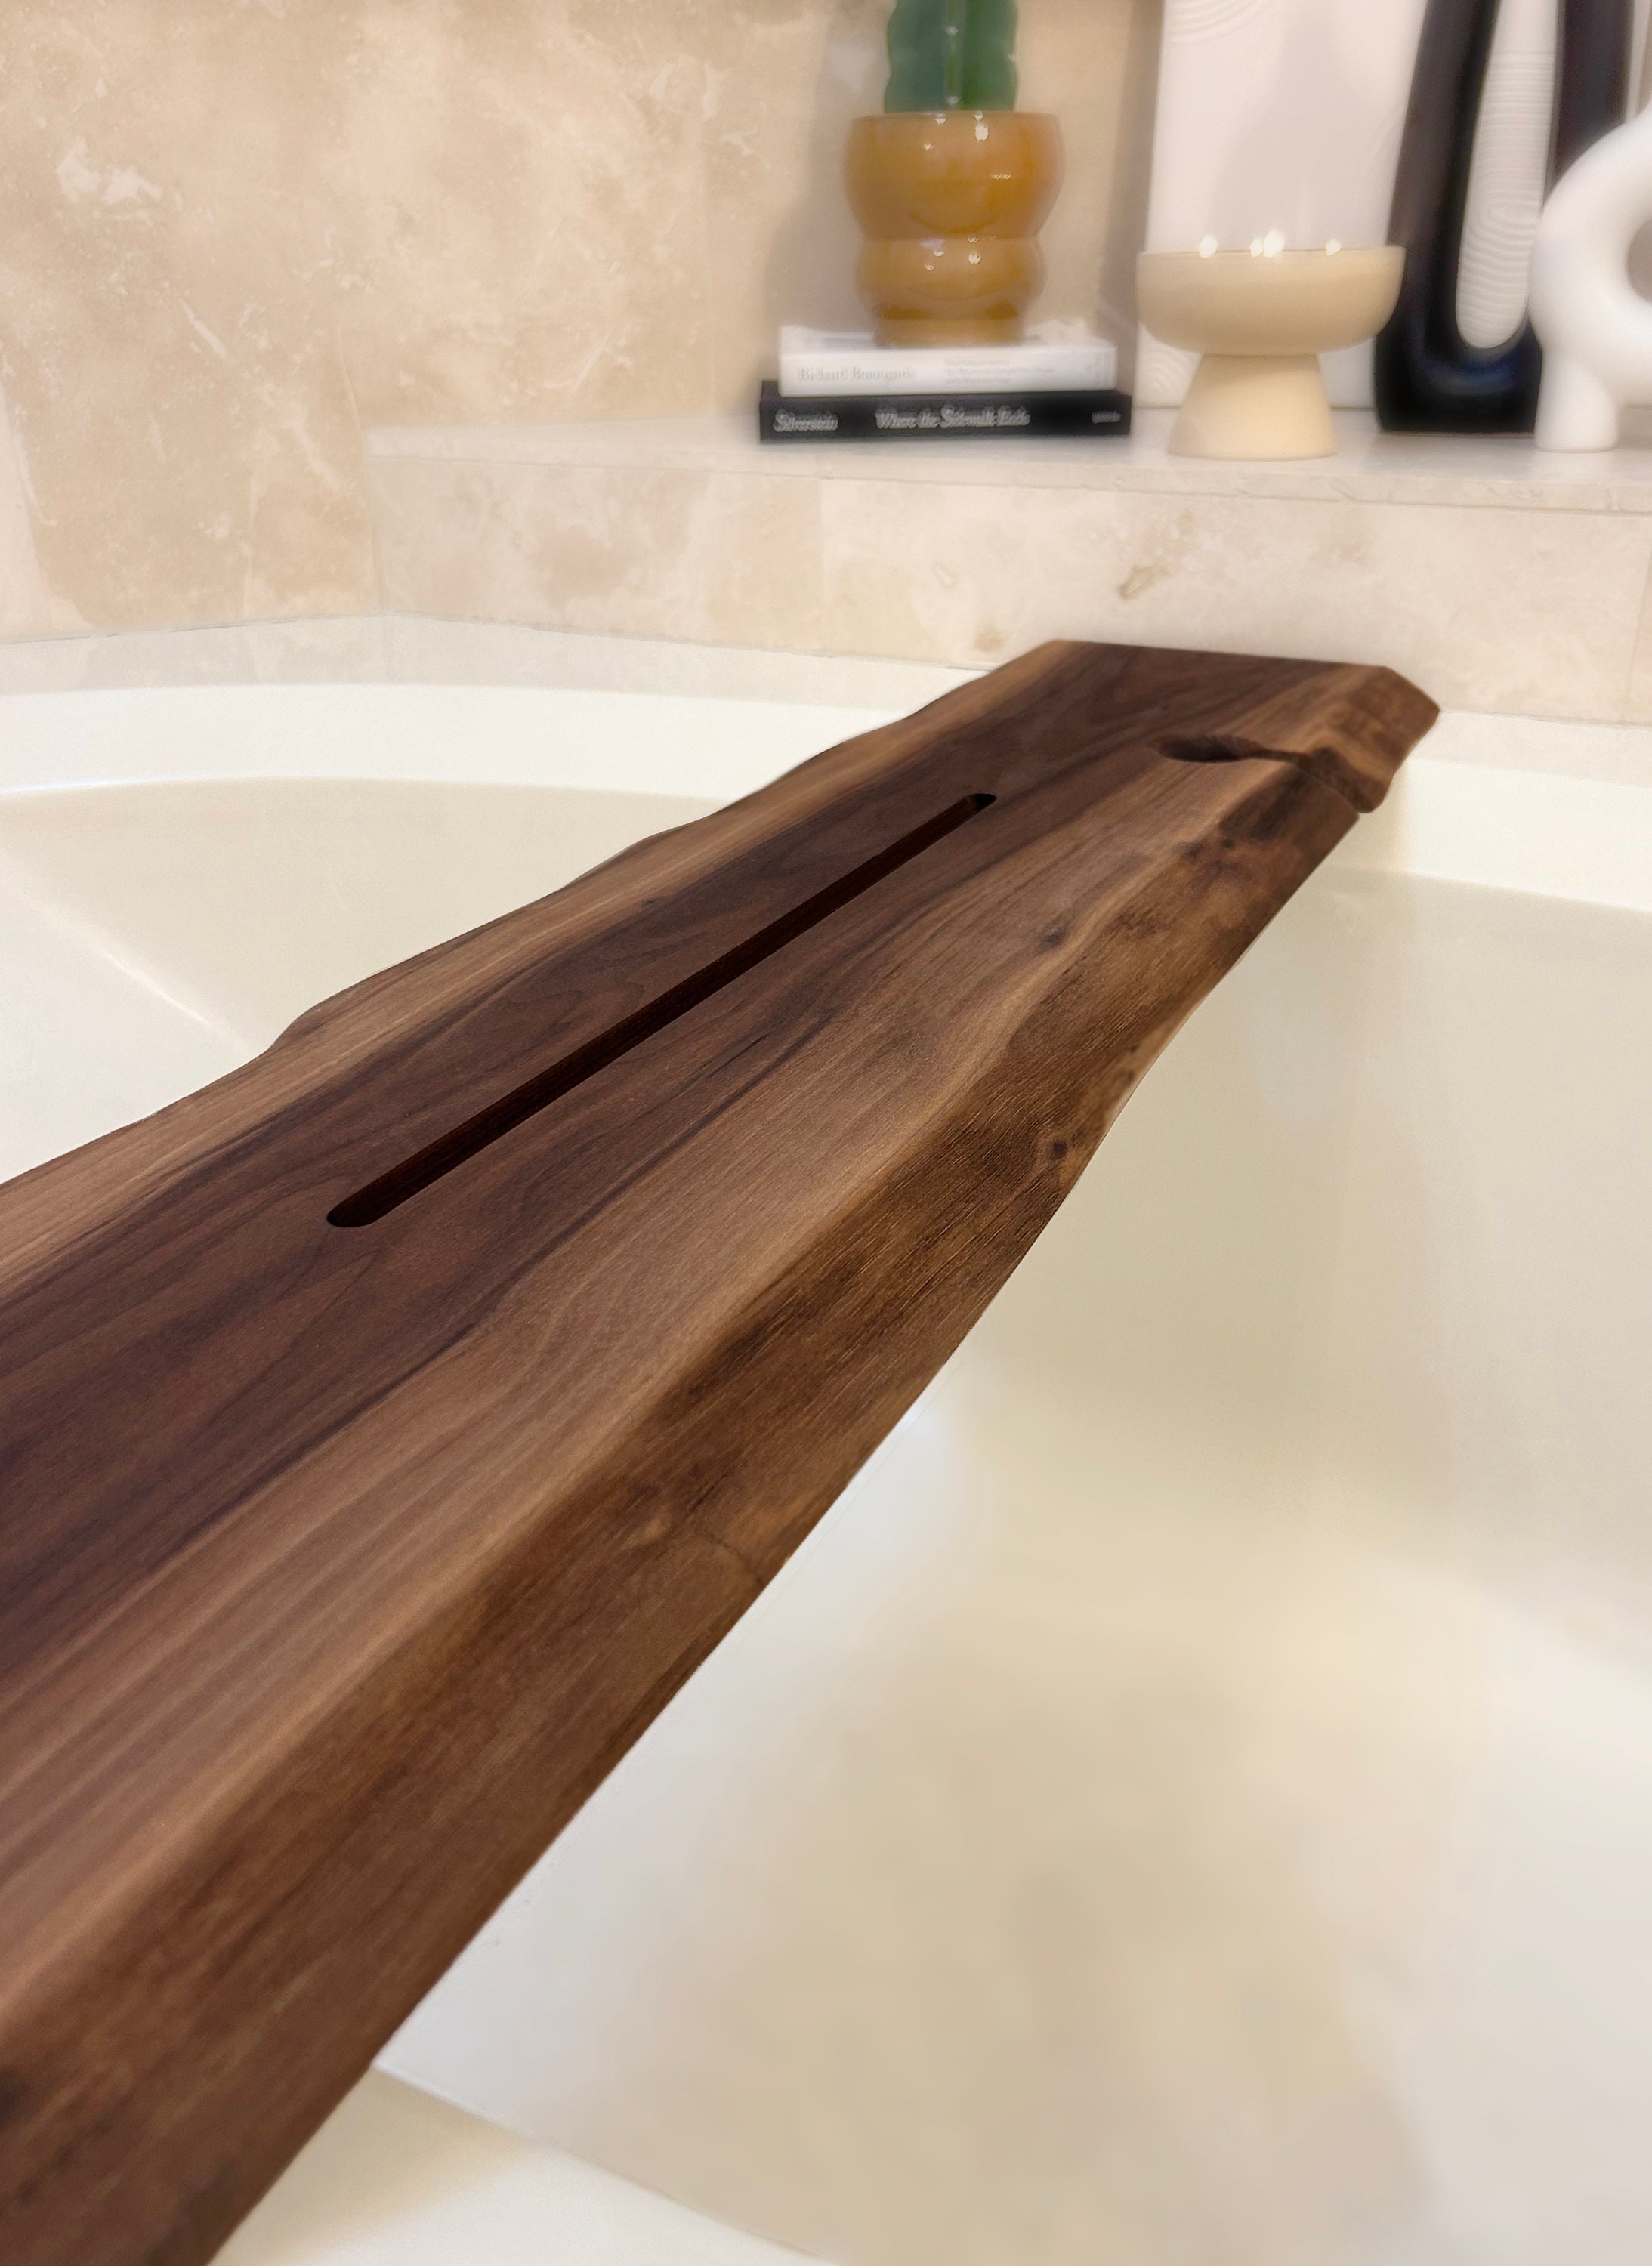 Black Wooden Bath Caddy, Bath Shelf, Bath Accessories, Live Edge Bath  Board, Modern Bathroom Decor, Wood Bath Tray, Bathtub Tray 